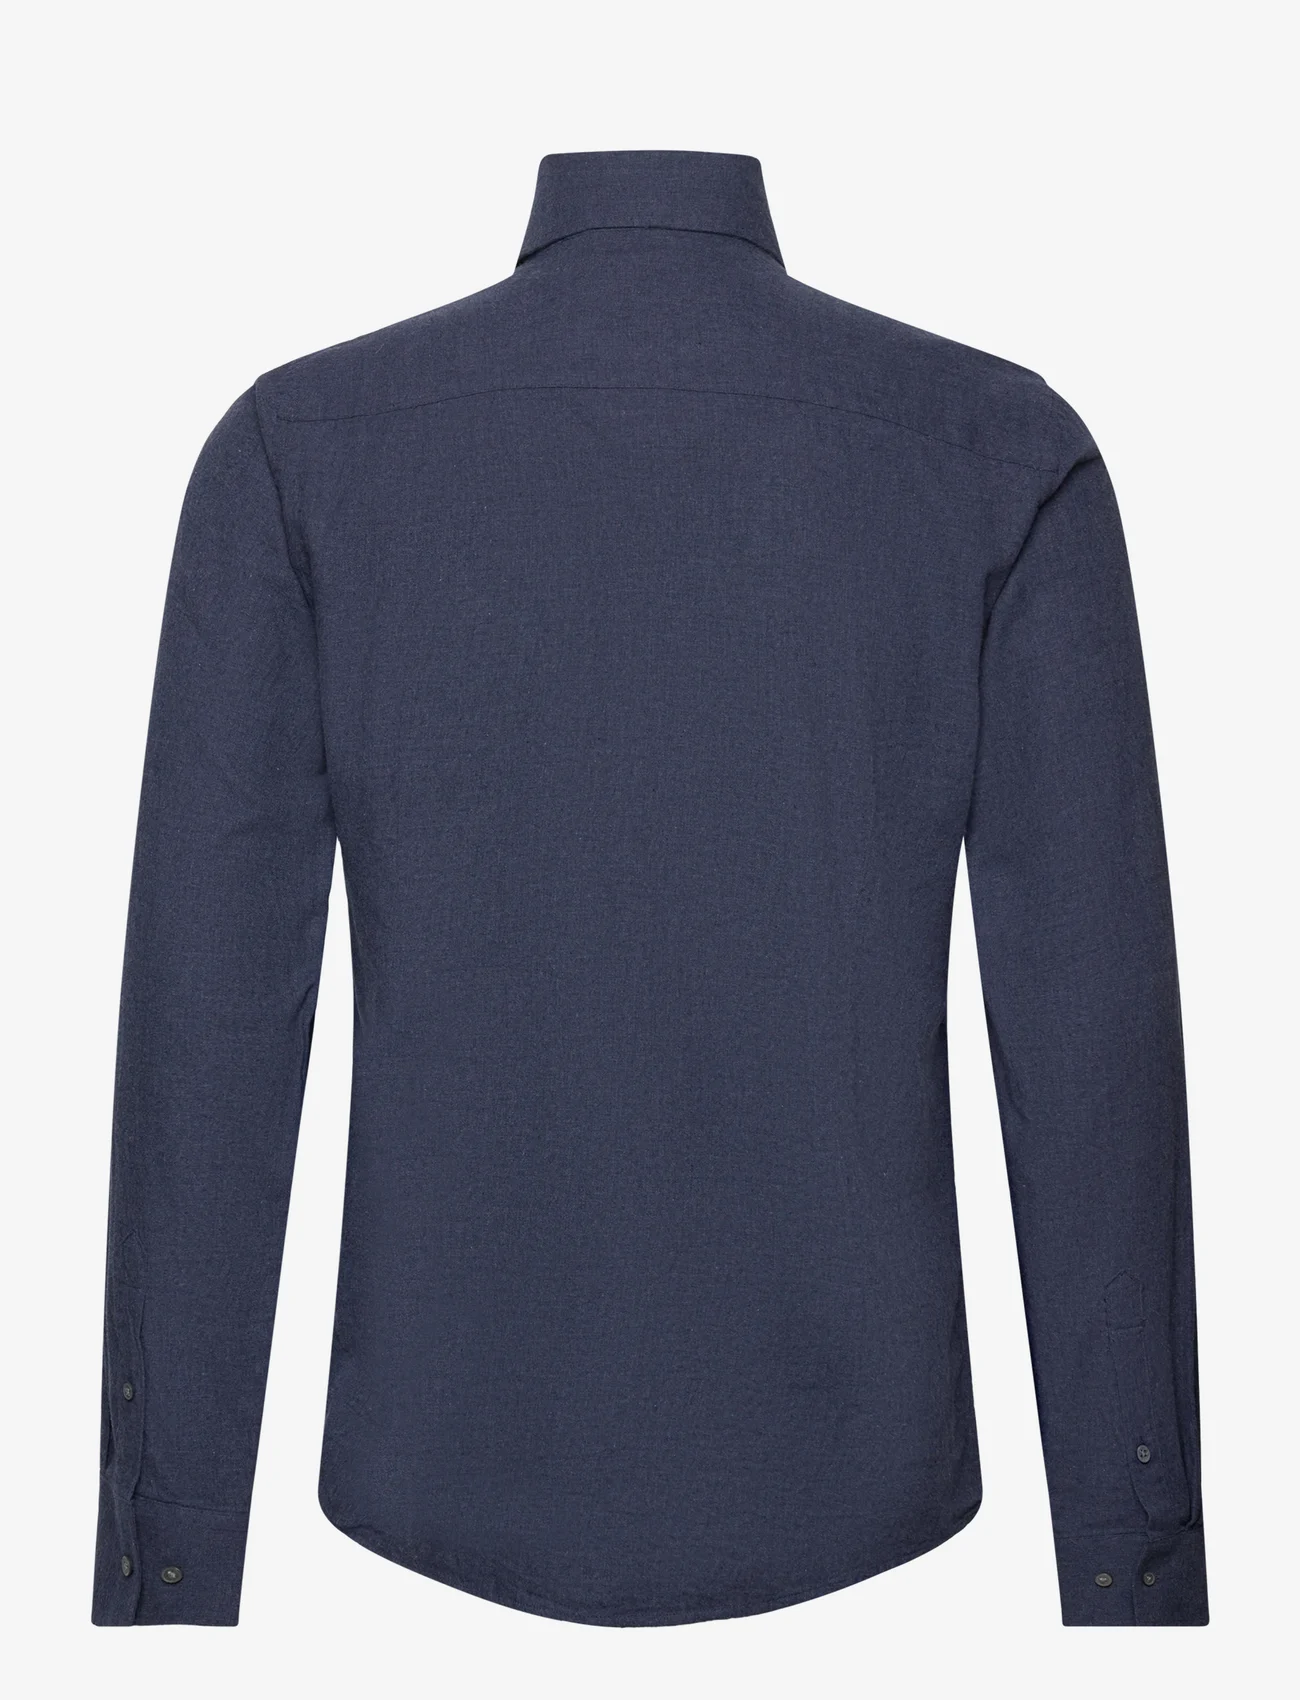 Bruun & Stengade - BS Floyd Casual Slim Fit Shirt - basic skjorter - blue - 1